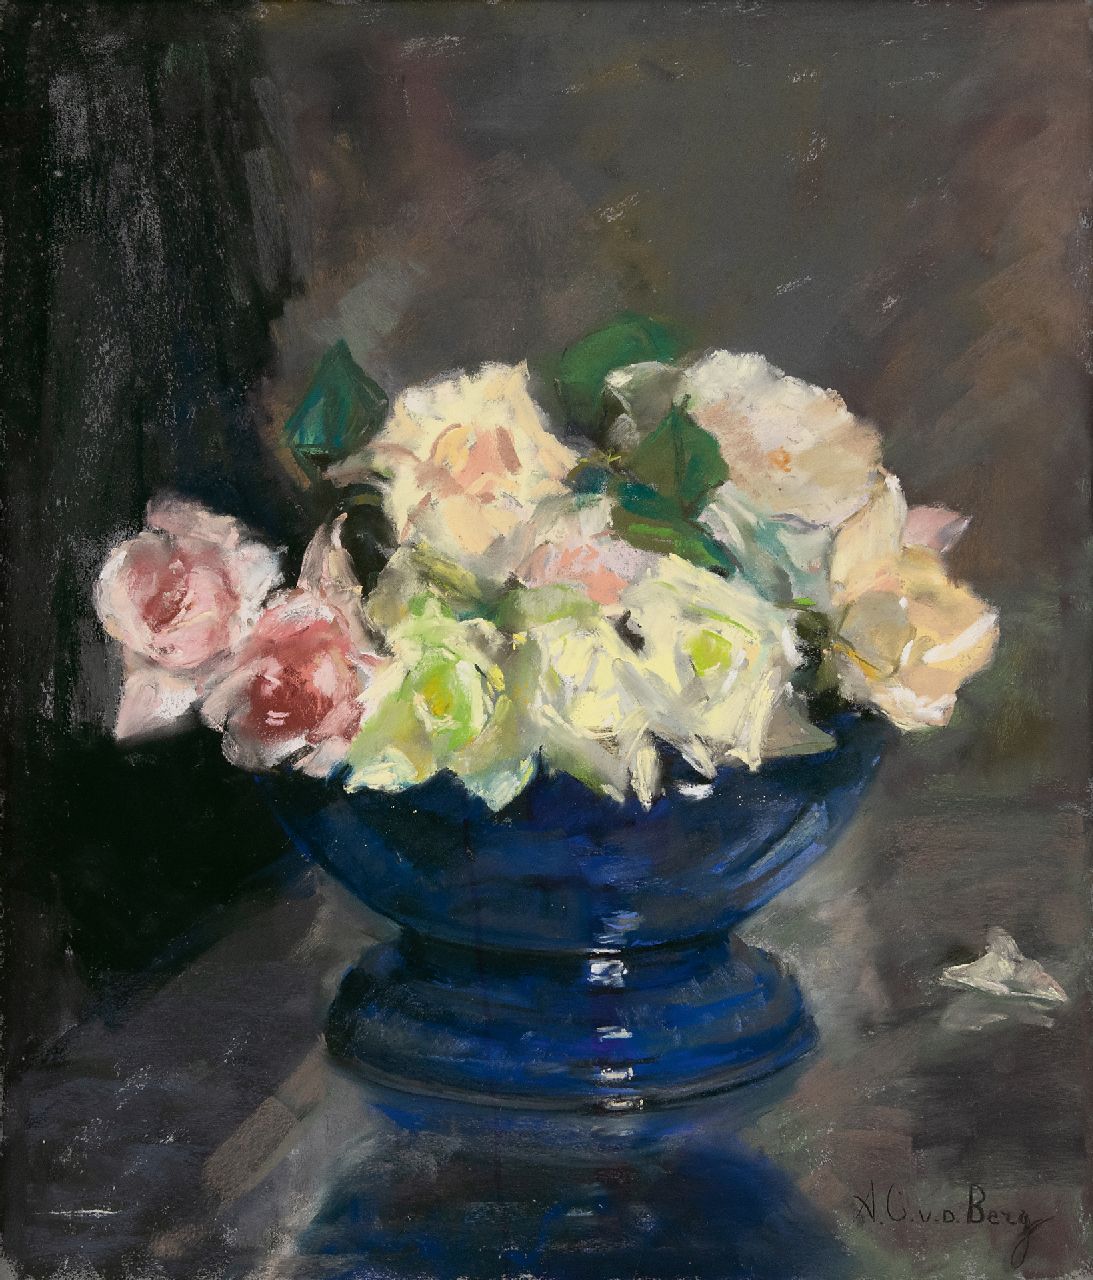 Berg A.C. van den | Anna Carolina 'Ans' van den Berg | Aquarellen en tekeningen te koop aangeboden | Blauw schaaltje met rozen, pastel op papier 43,0 x 37,0 cm, gesigneerd rechtsonder